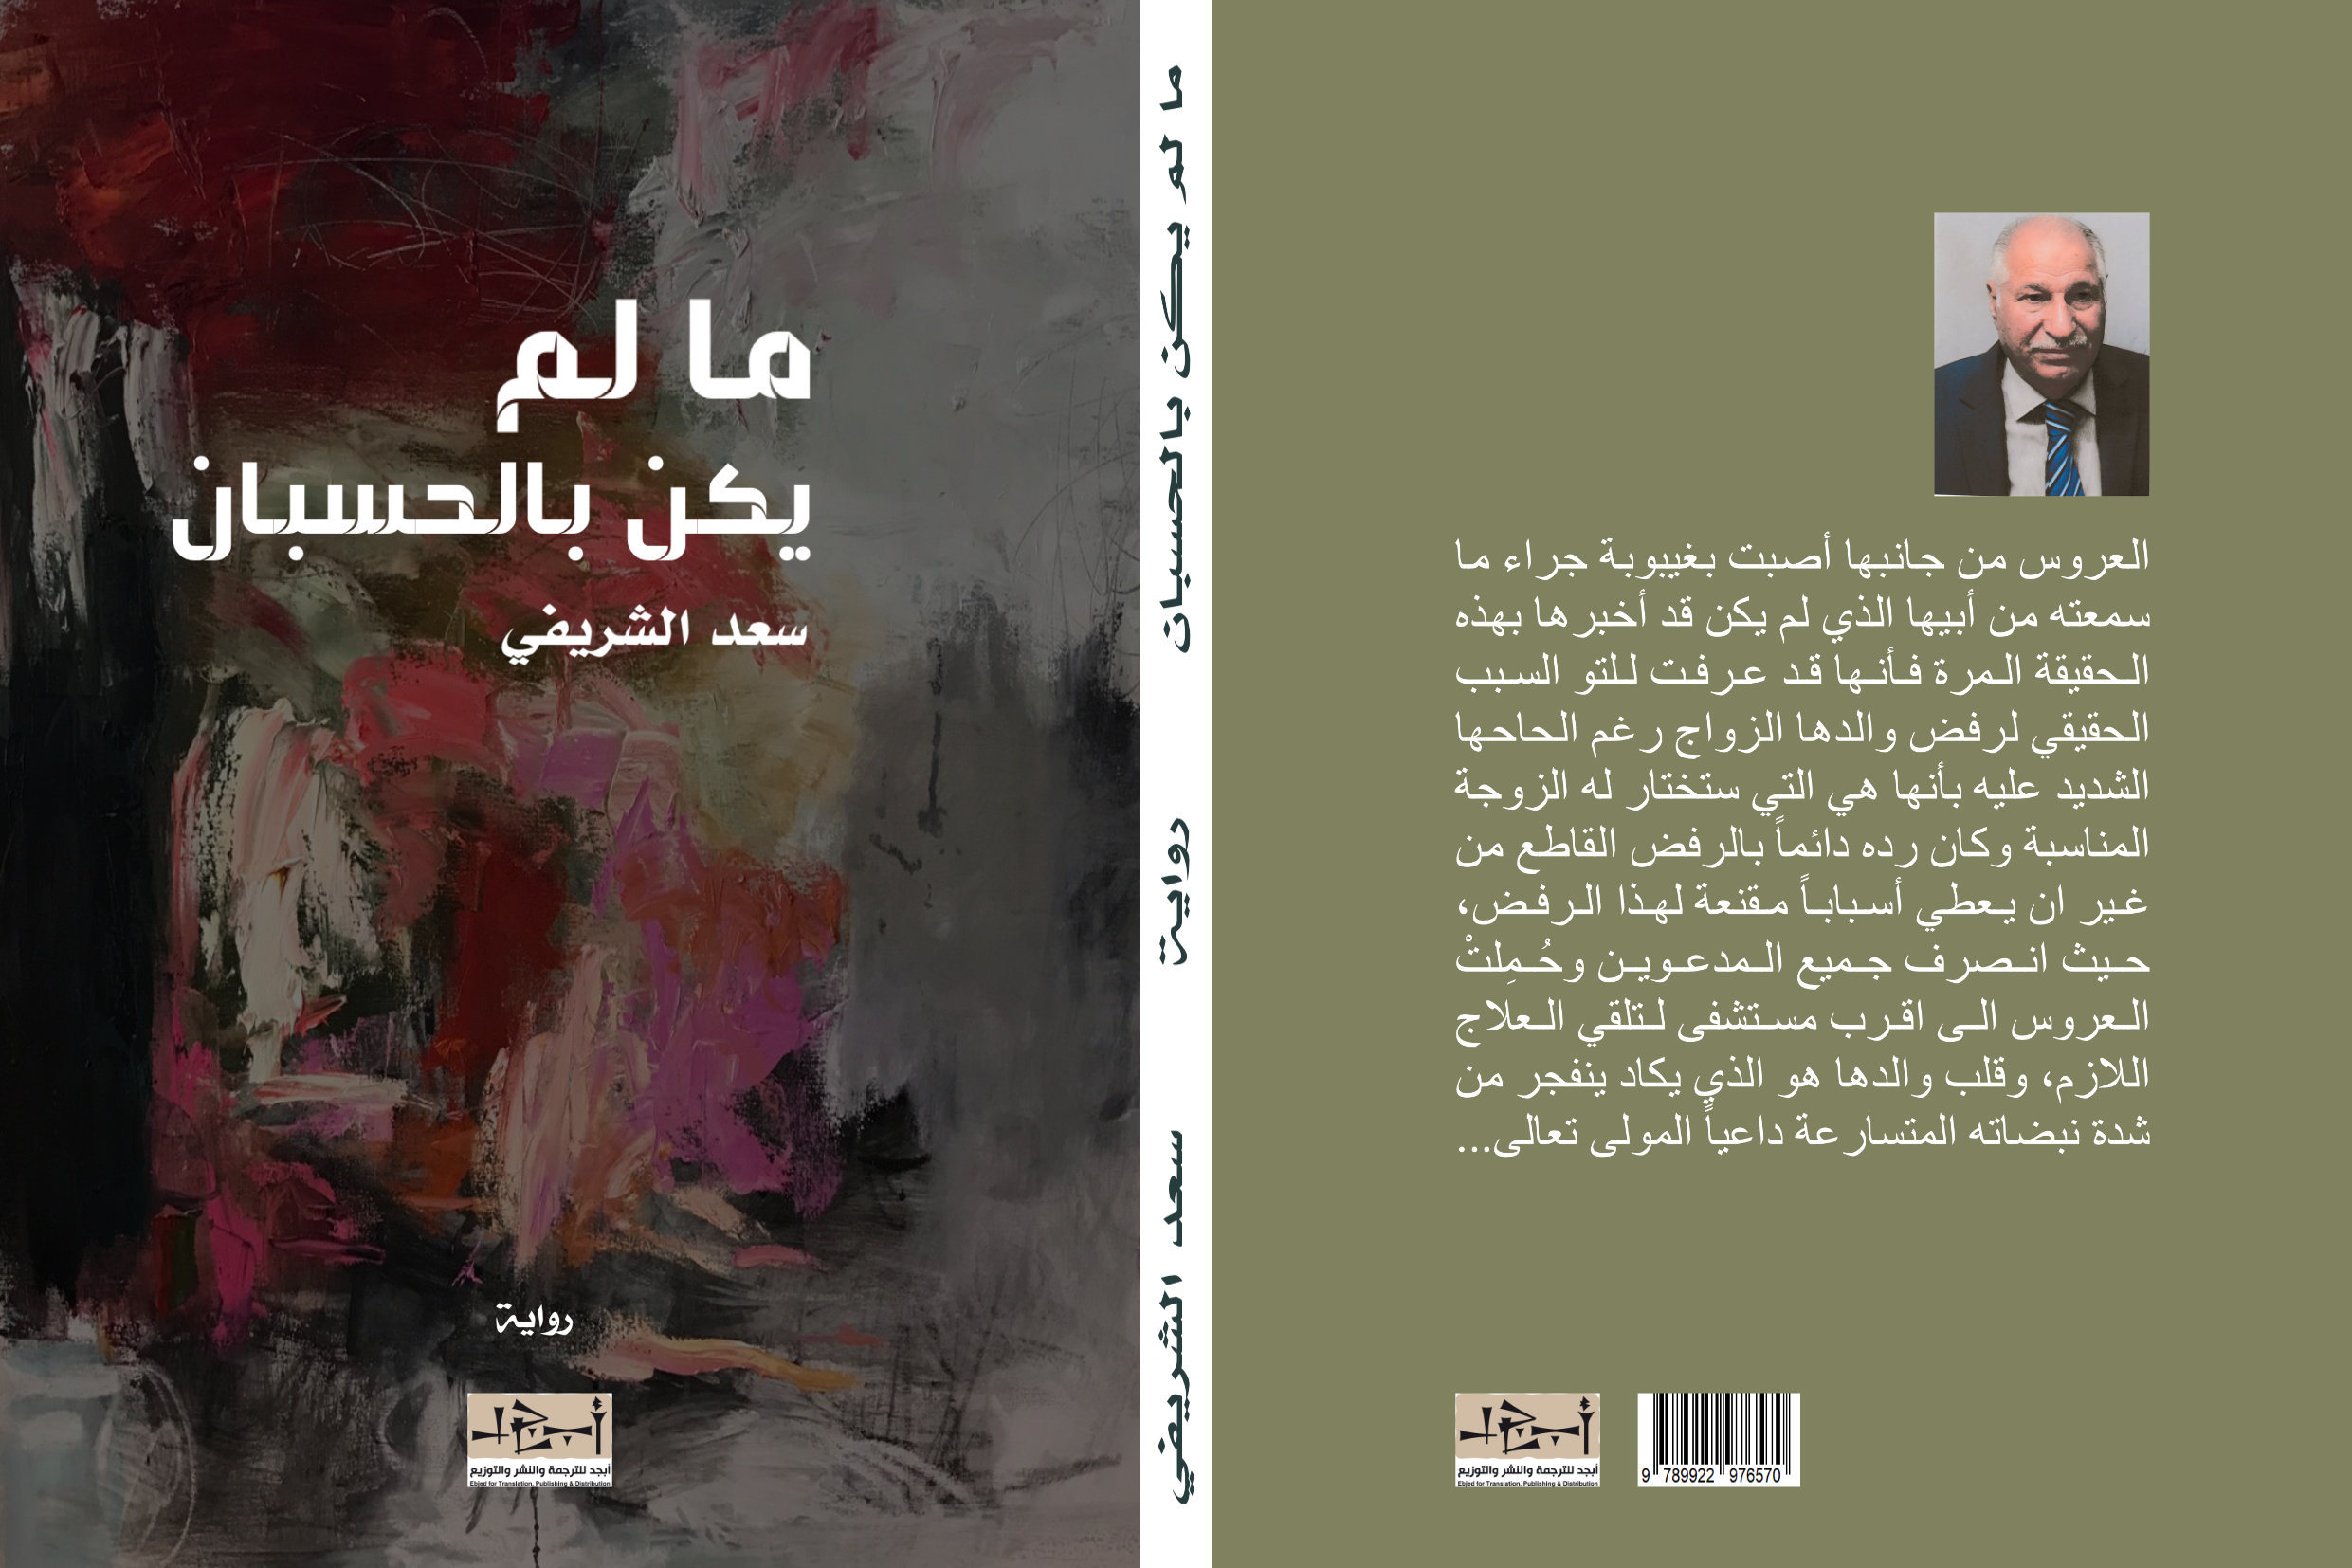 اسم الكتاب: ما لم يكن بالحسبان تأليف: سعد الشريفي